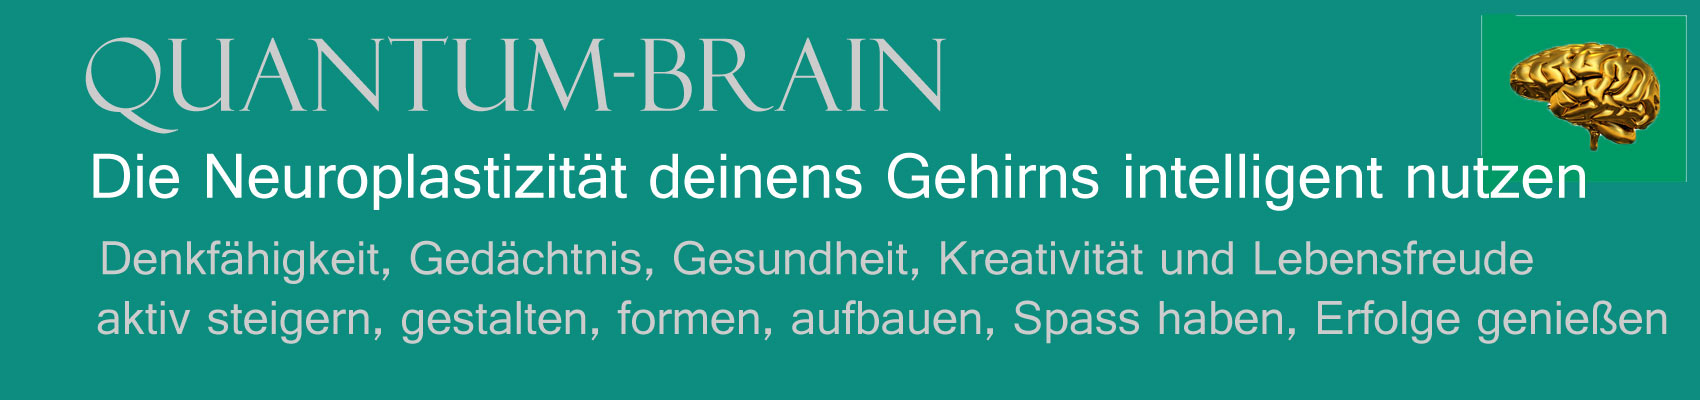 Quantum-brain, Neuroplastizität, Gehinrntraining, Gesundheit, Gedächtnistraining, Alzheimer vorbeugen, Vorbeugung, Gehirngesundheit